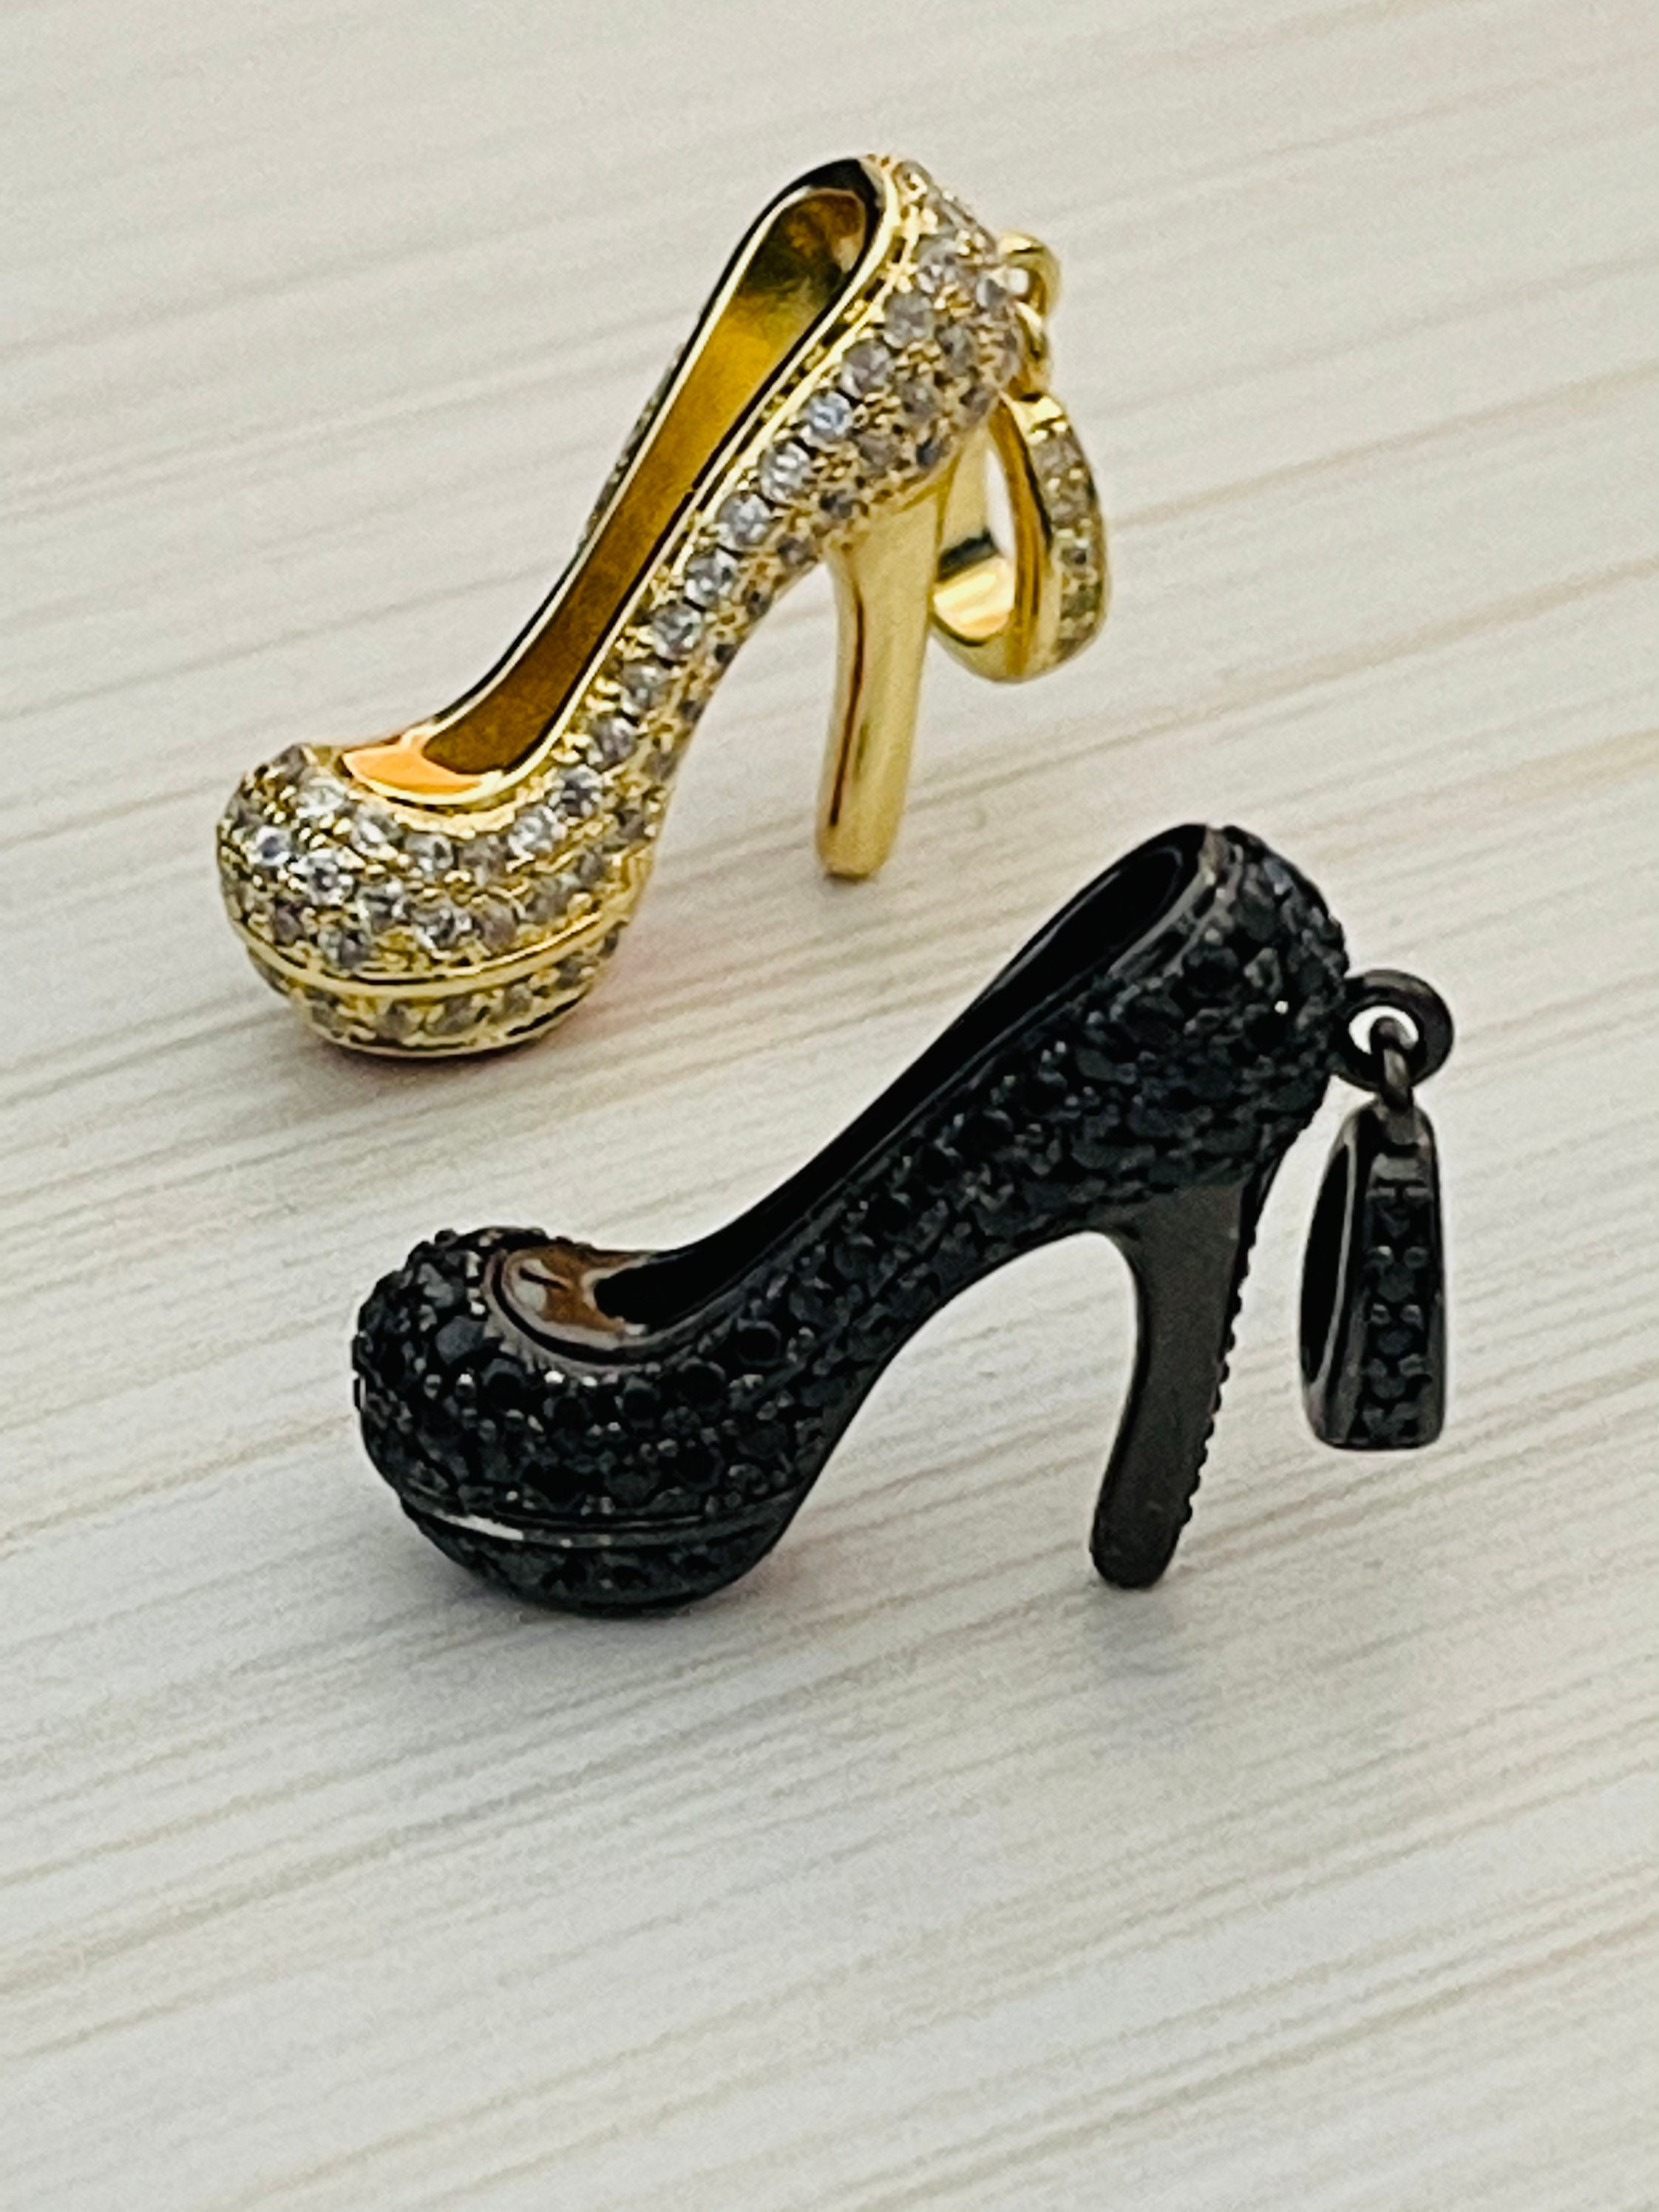 1 Gorgeous CZ stiletto high heel shoe charm 3D 2 colors | Etsy